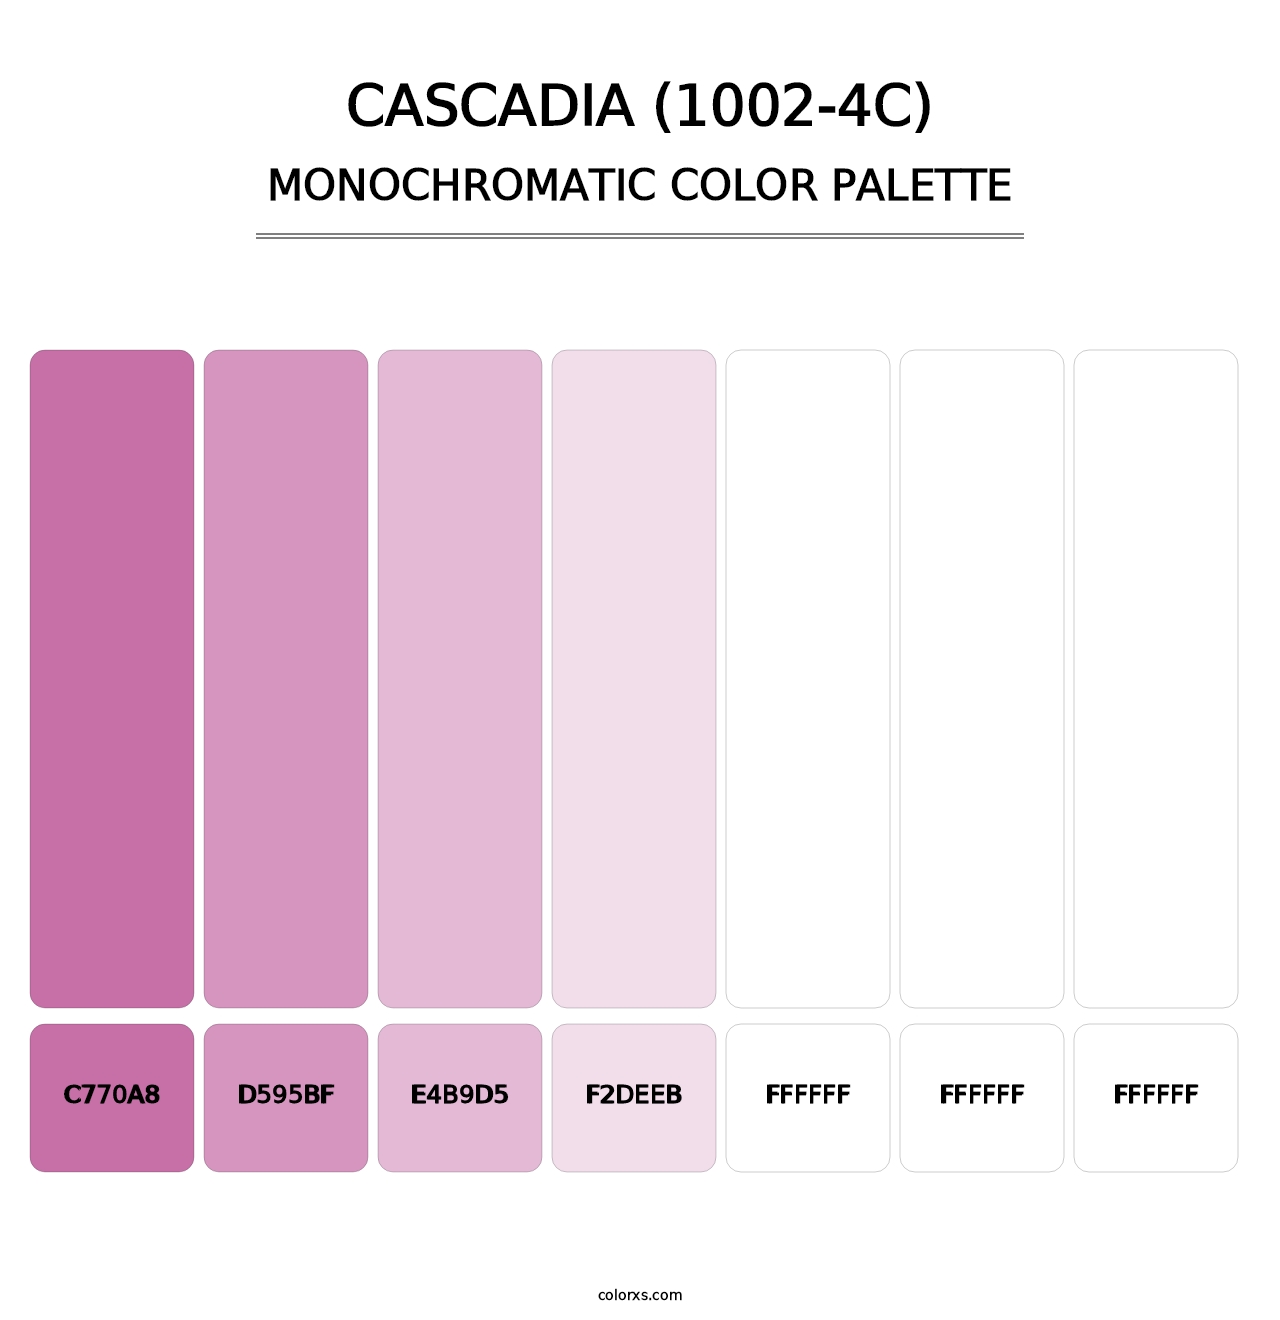 Cascadia (1002-4C) - Monochromatic Color Palette